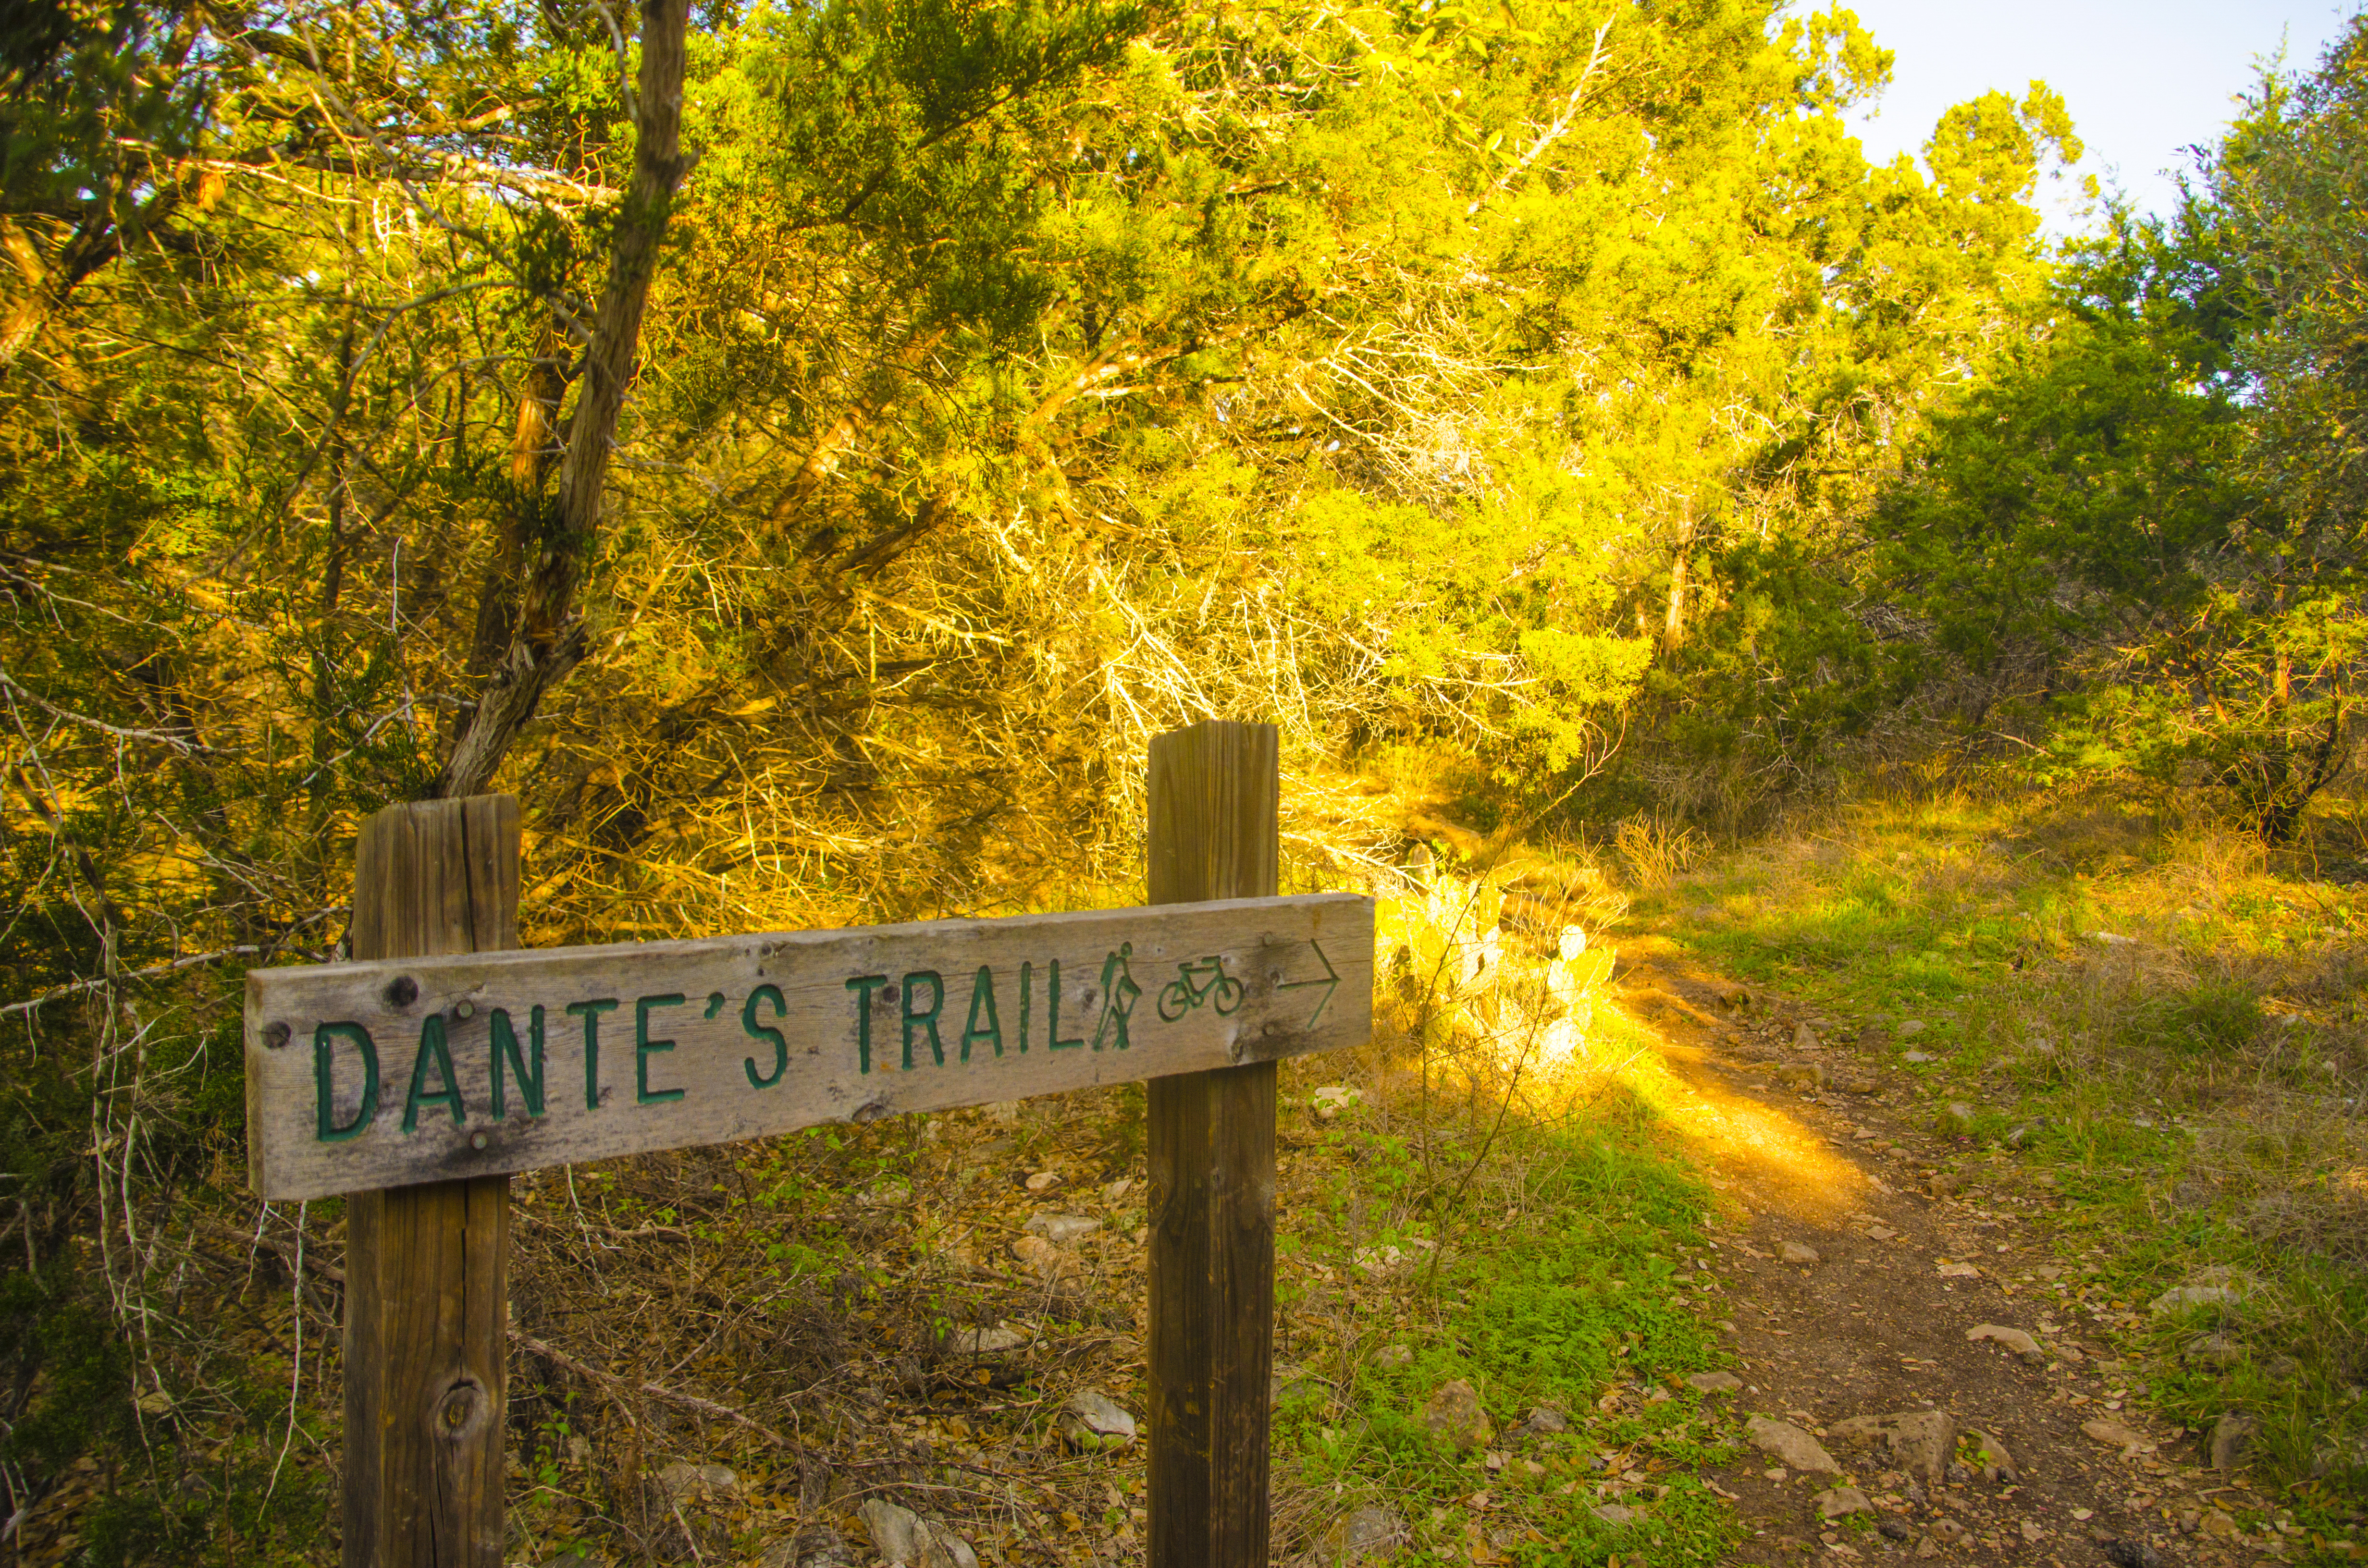 Dante's Trail